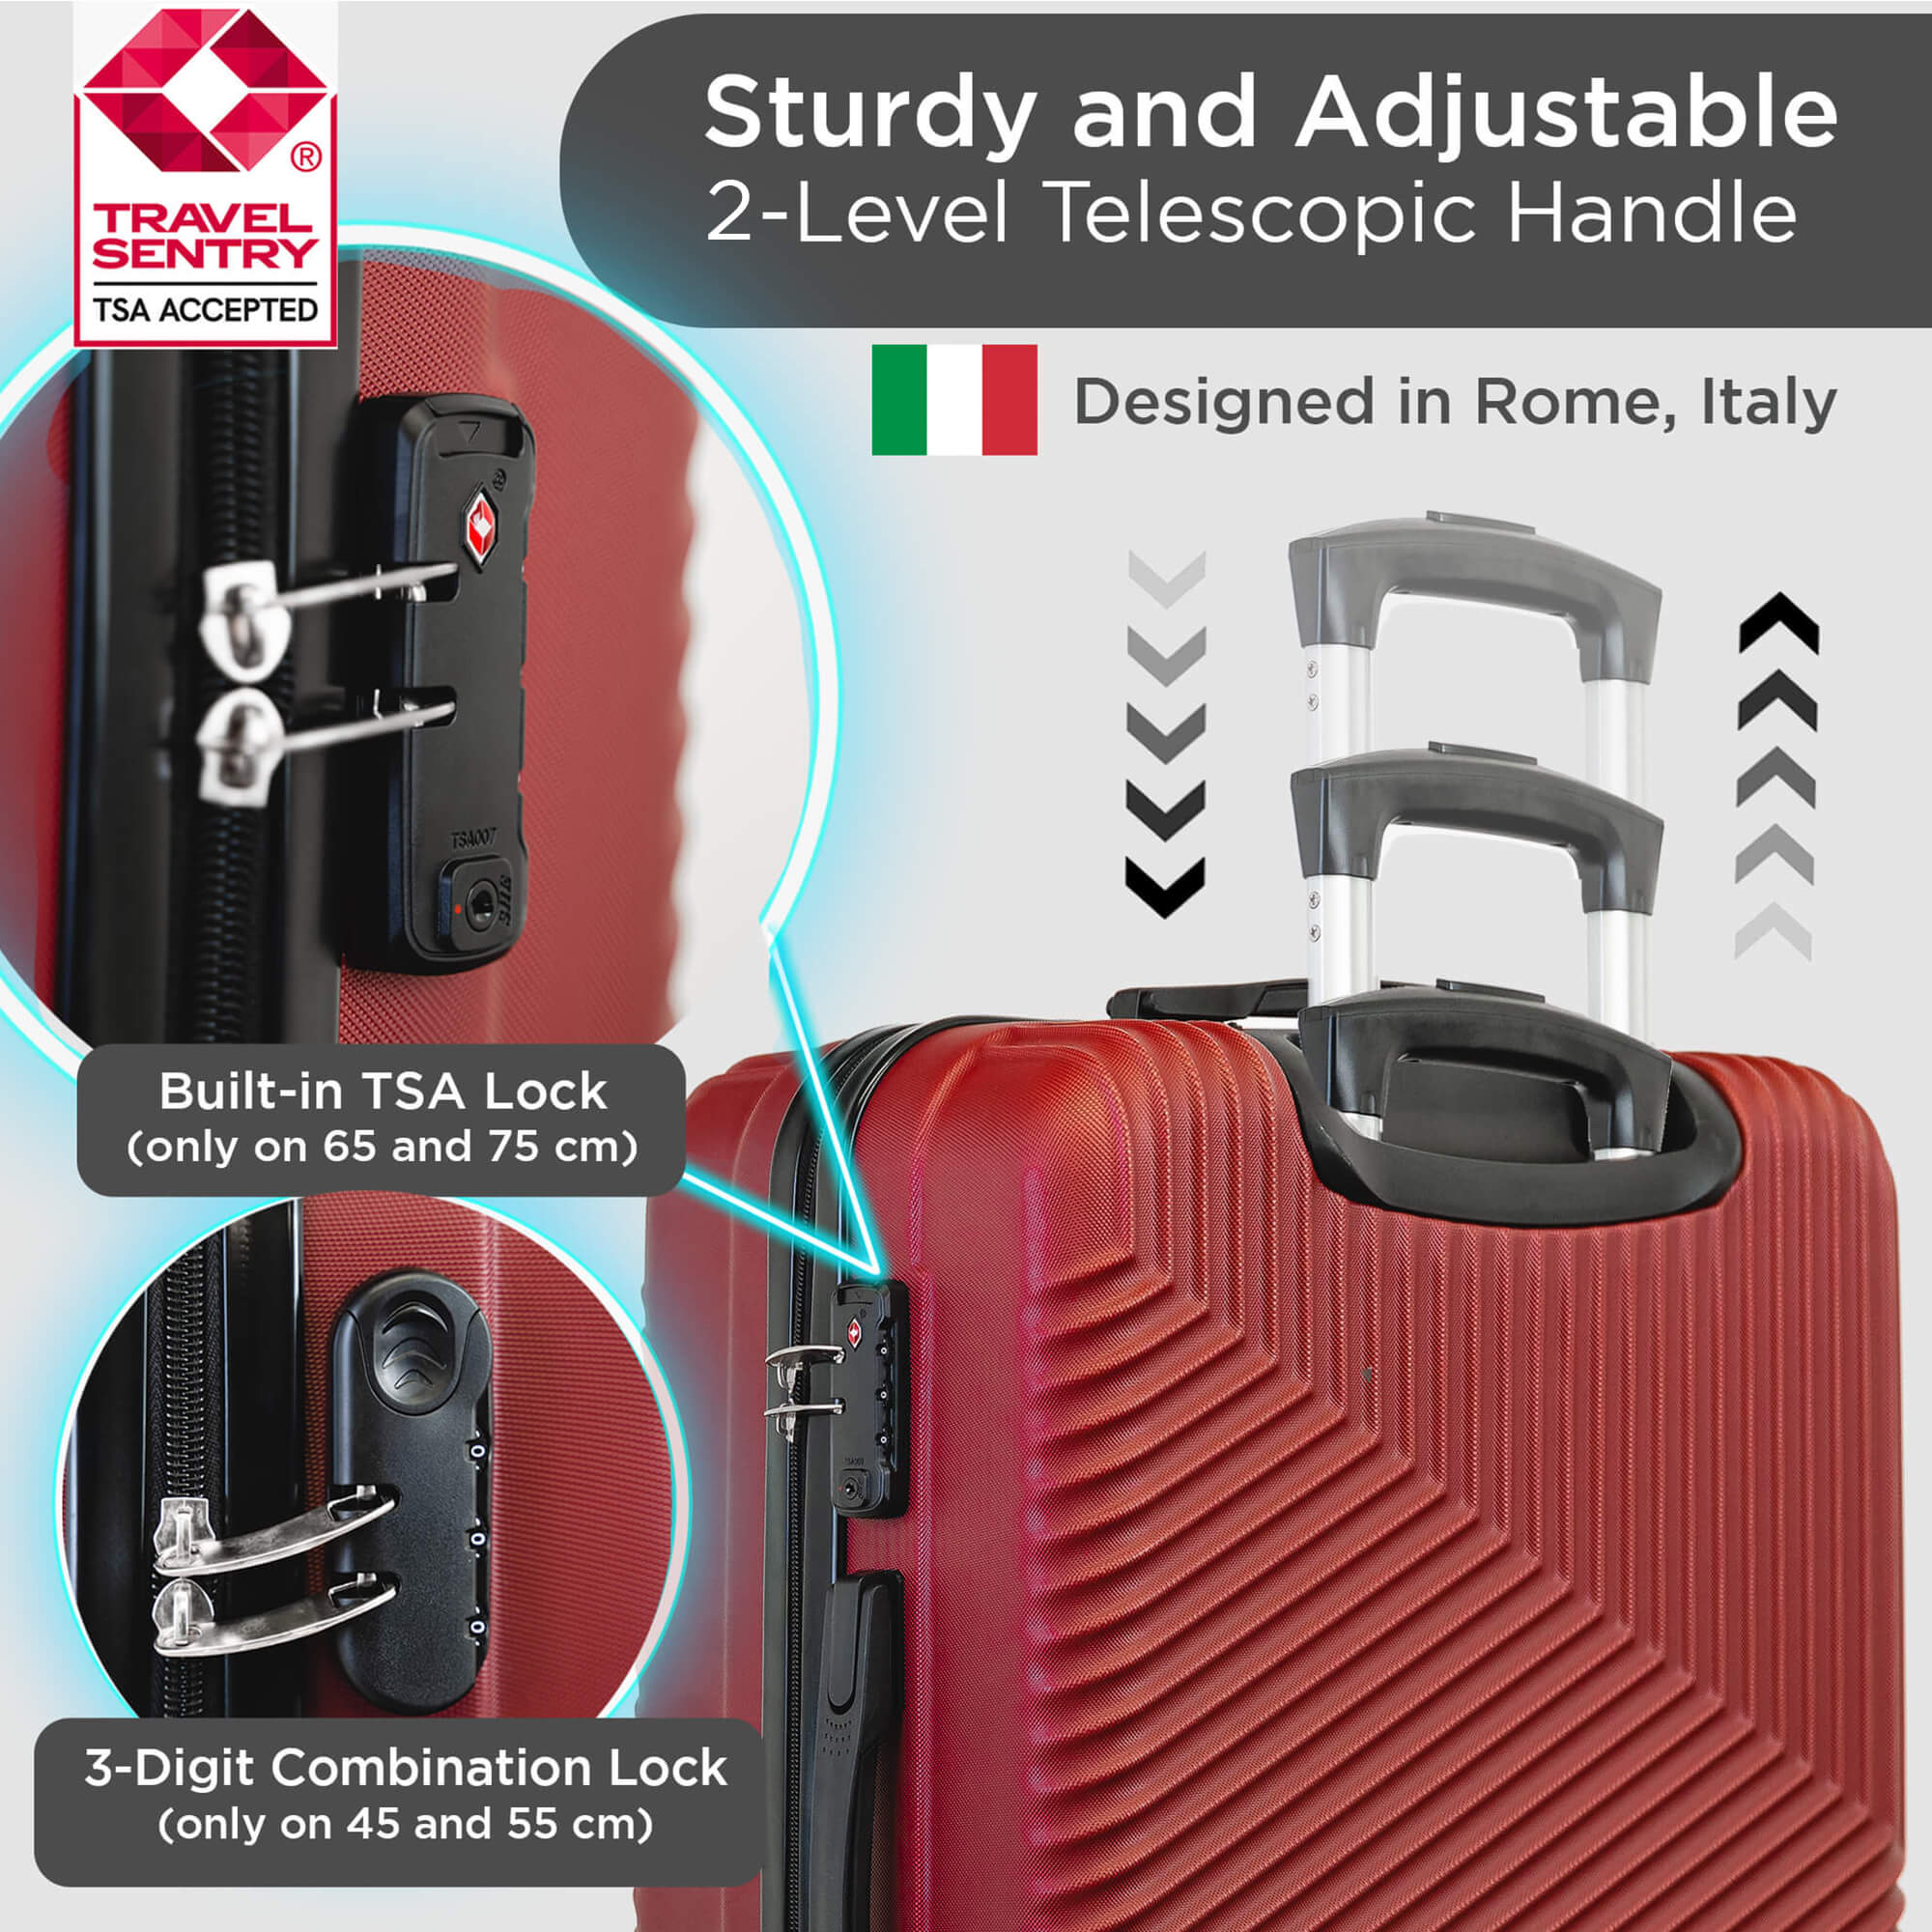 Ensemble de valises rigides sur roues pivotantes à 360° avec cadenas TSA - Roma Design